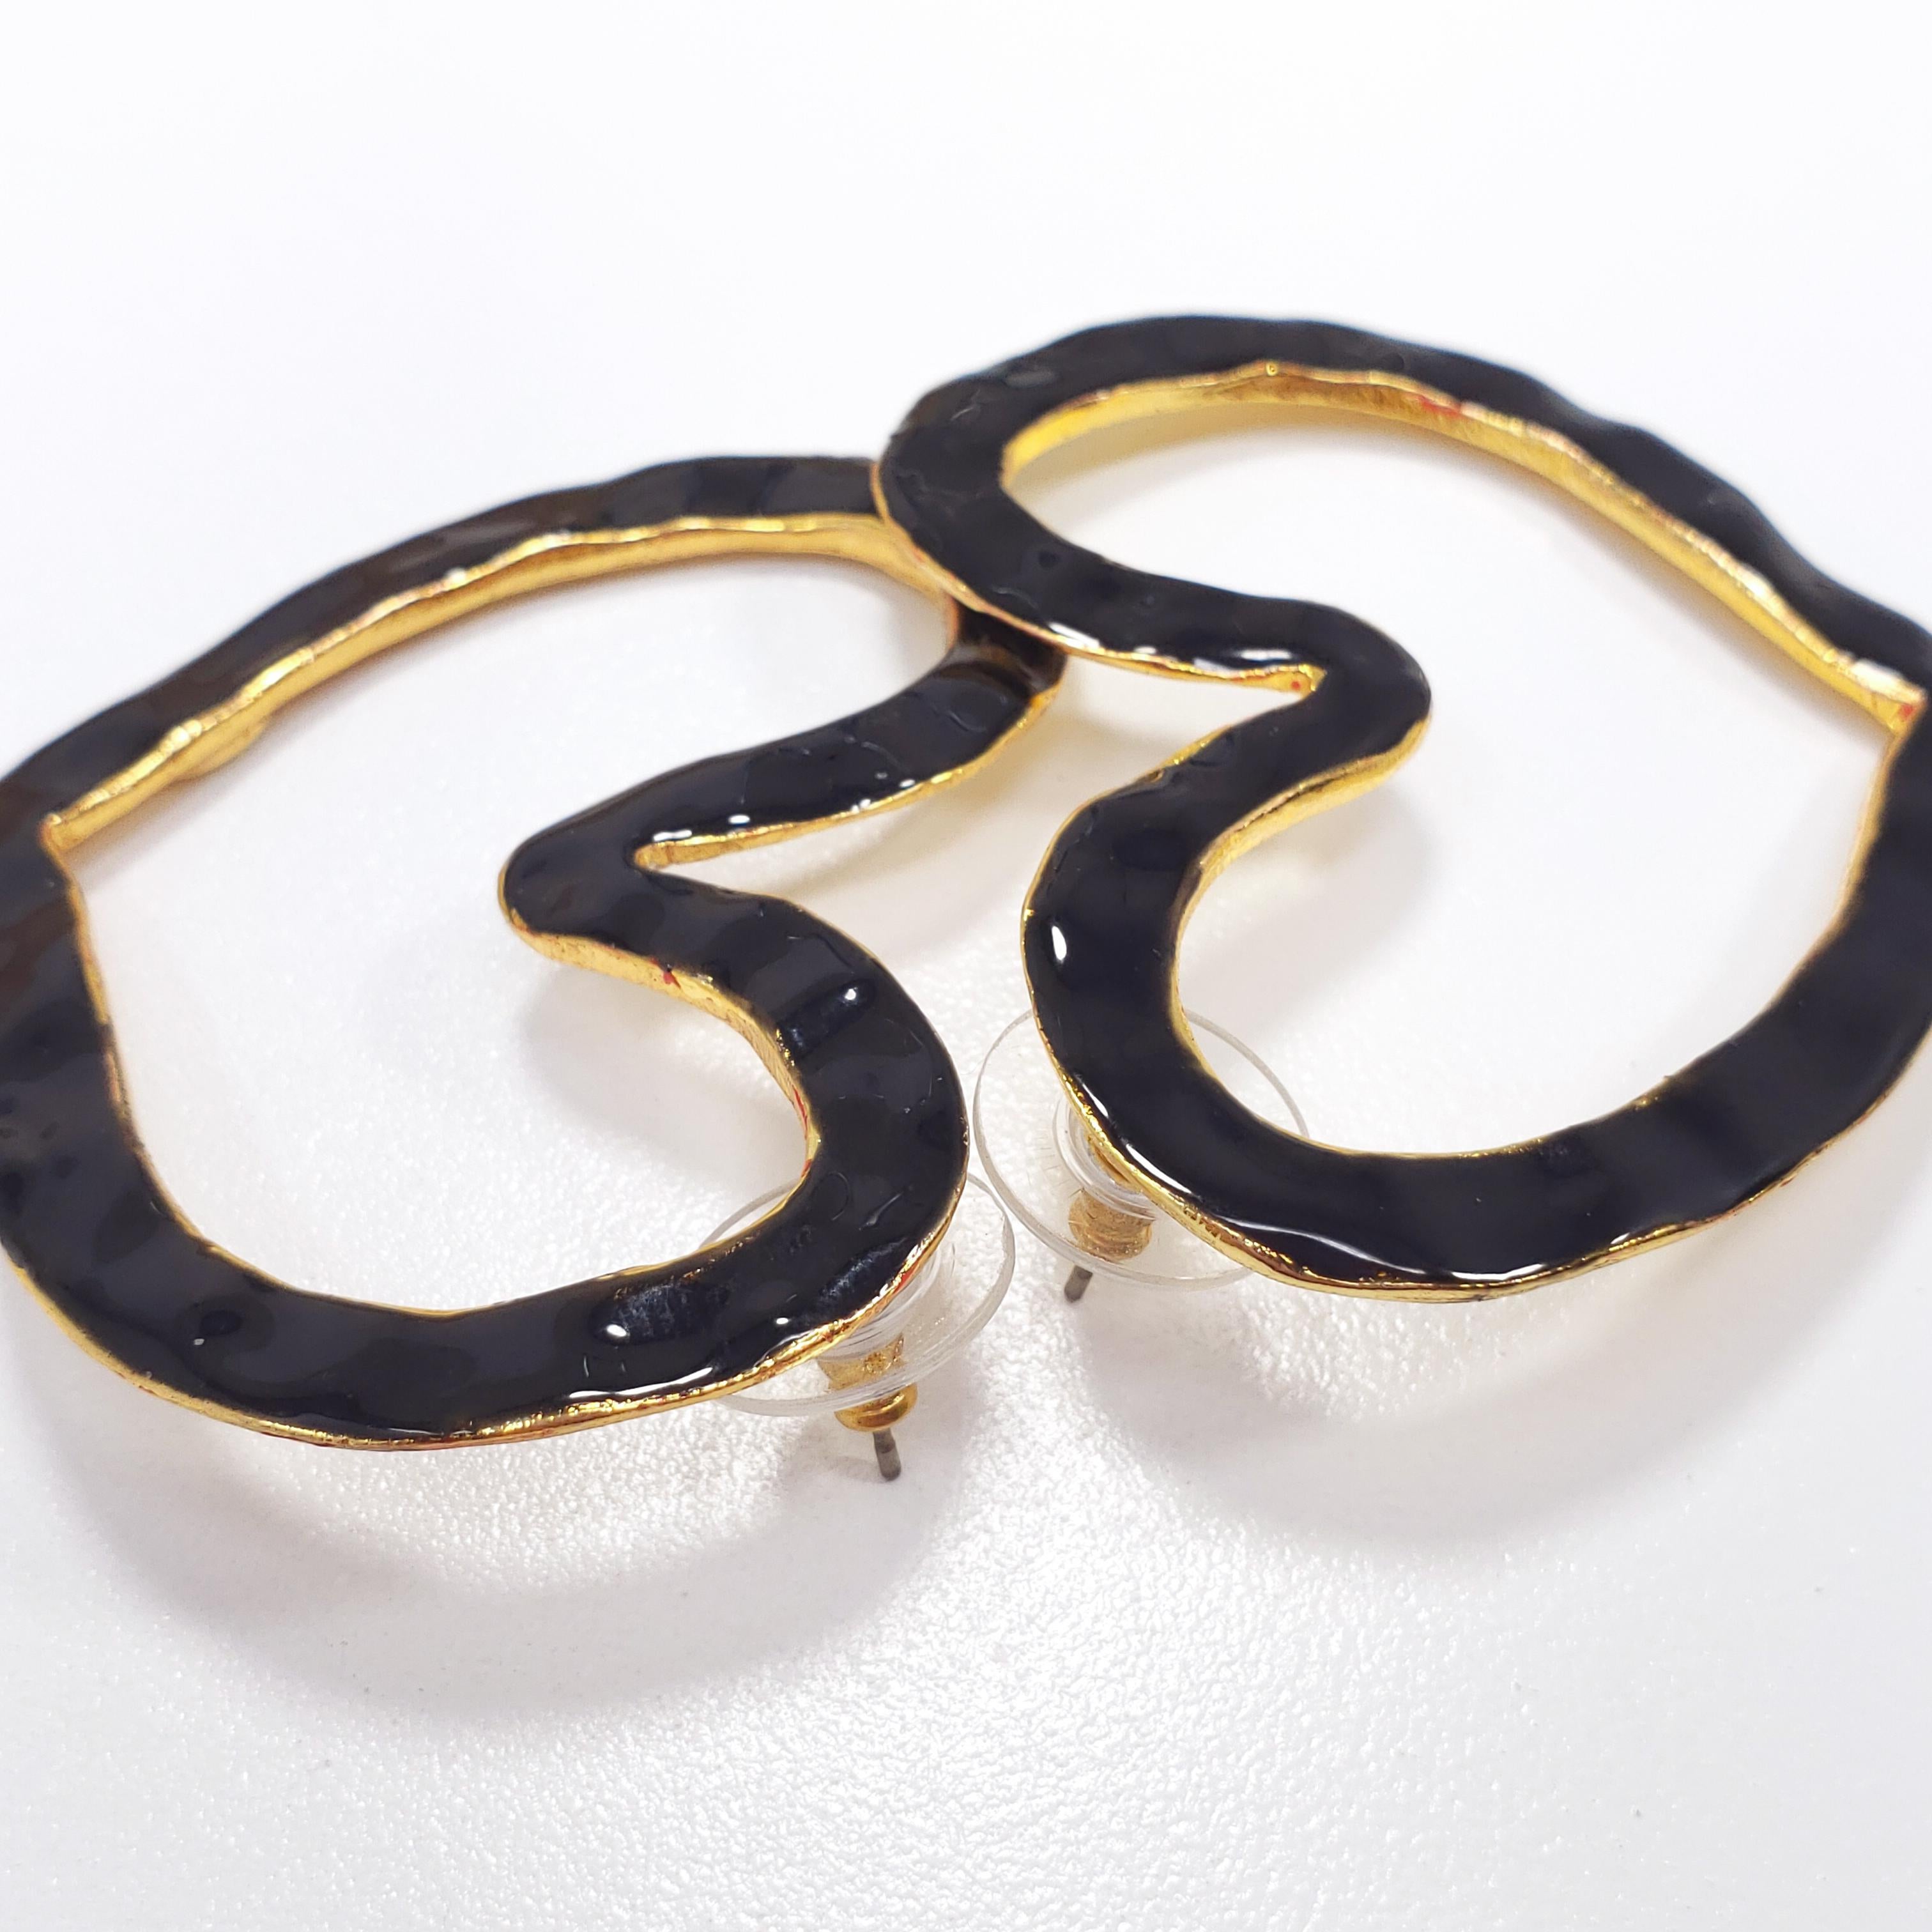 Women's Oscar de la Renta Heart Outline Dangling Earrings Textured Black Enamel in Gold